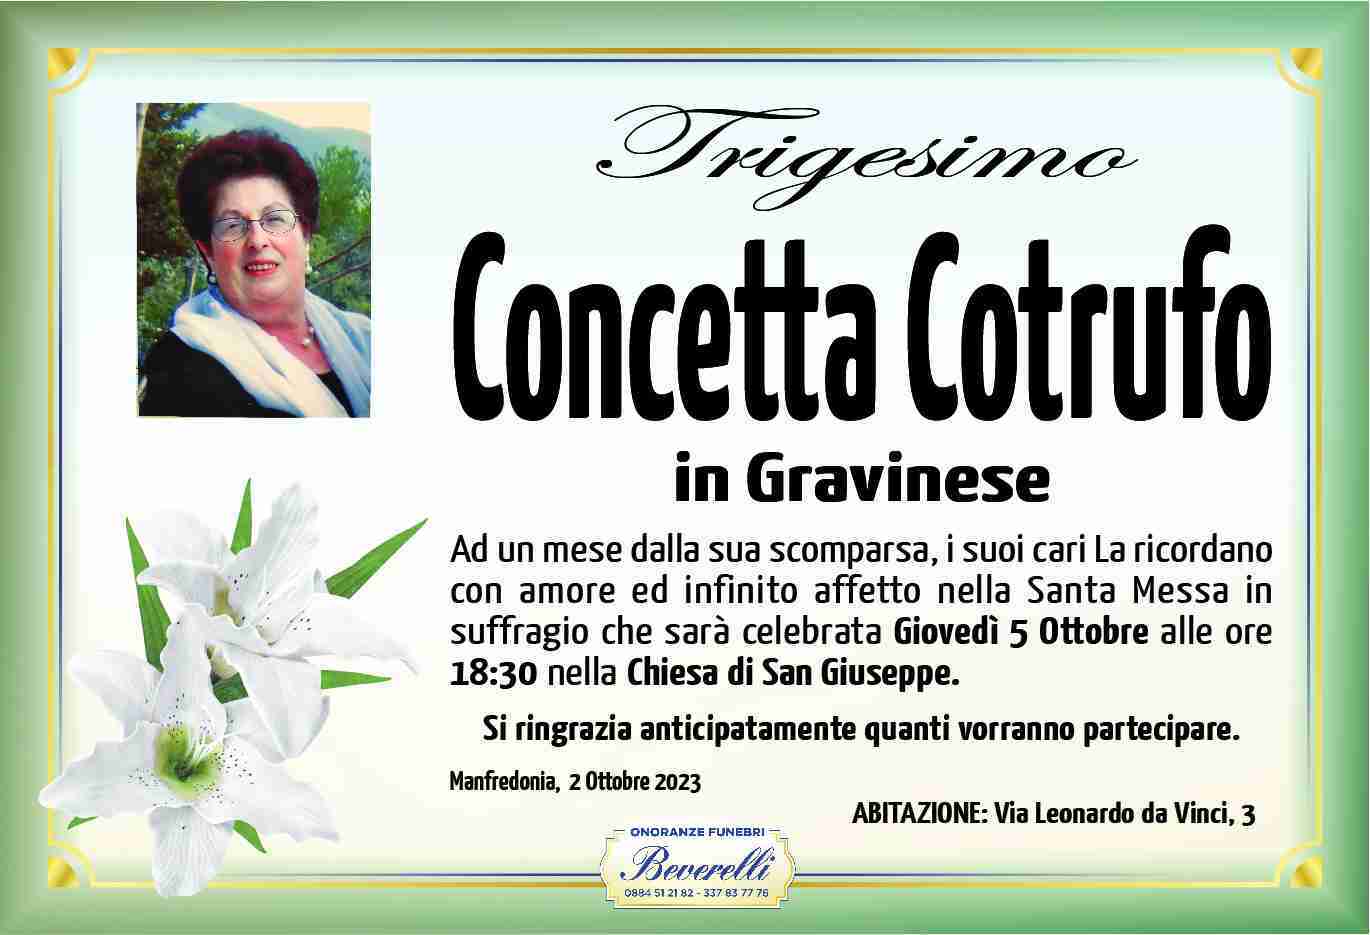 Concetta Cotrufo